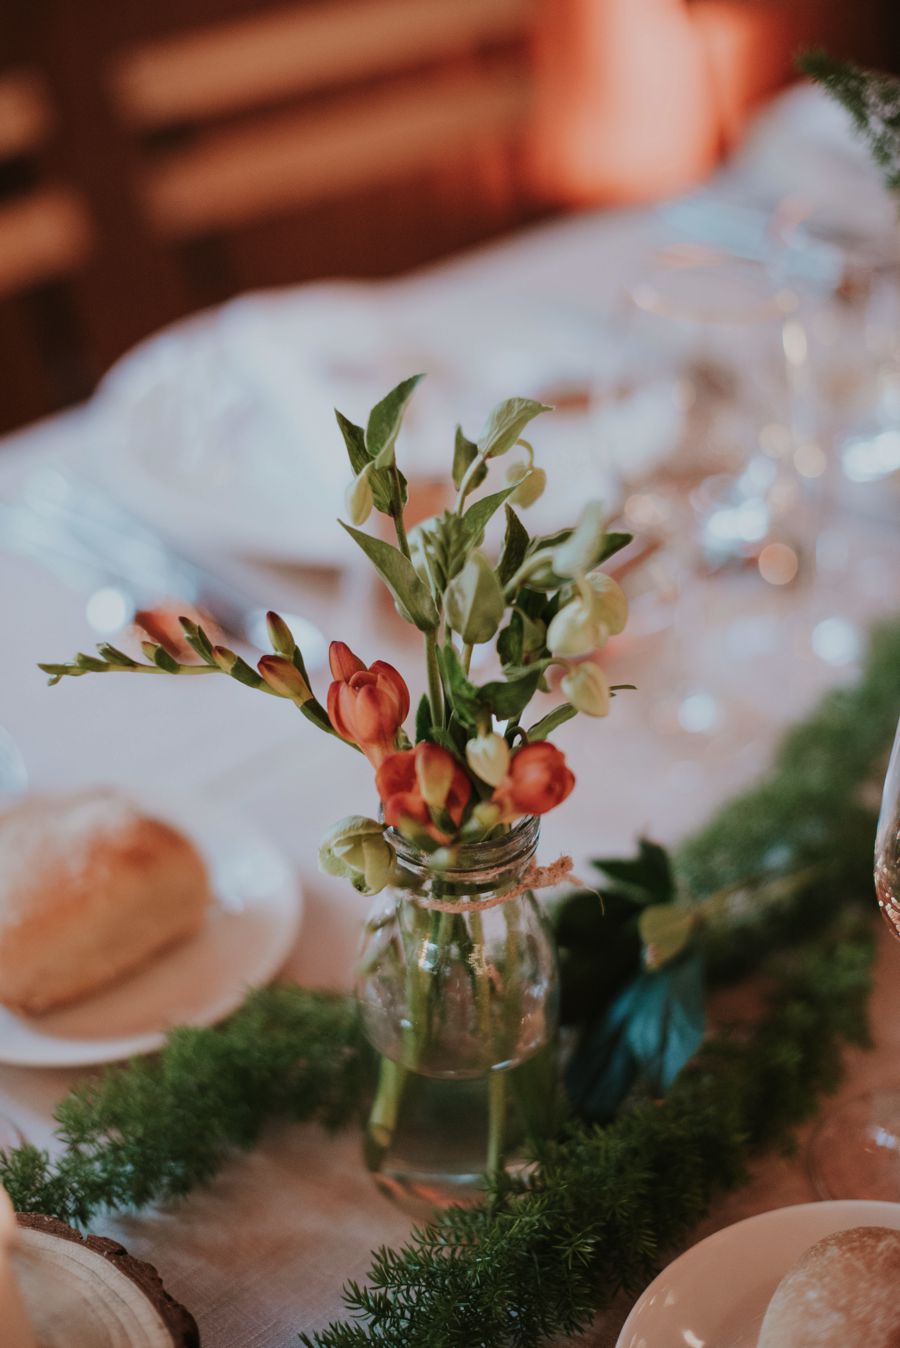 Décoration de table de mariage en avril avec la freesia comme bouquet végétal au thème nature chic.